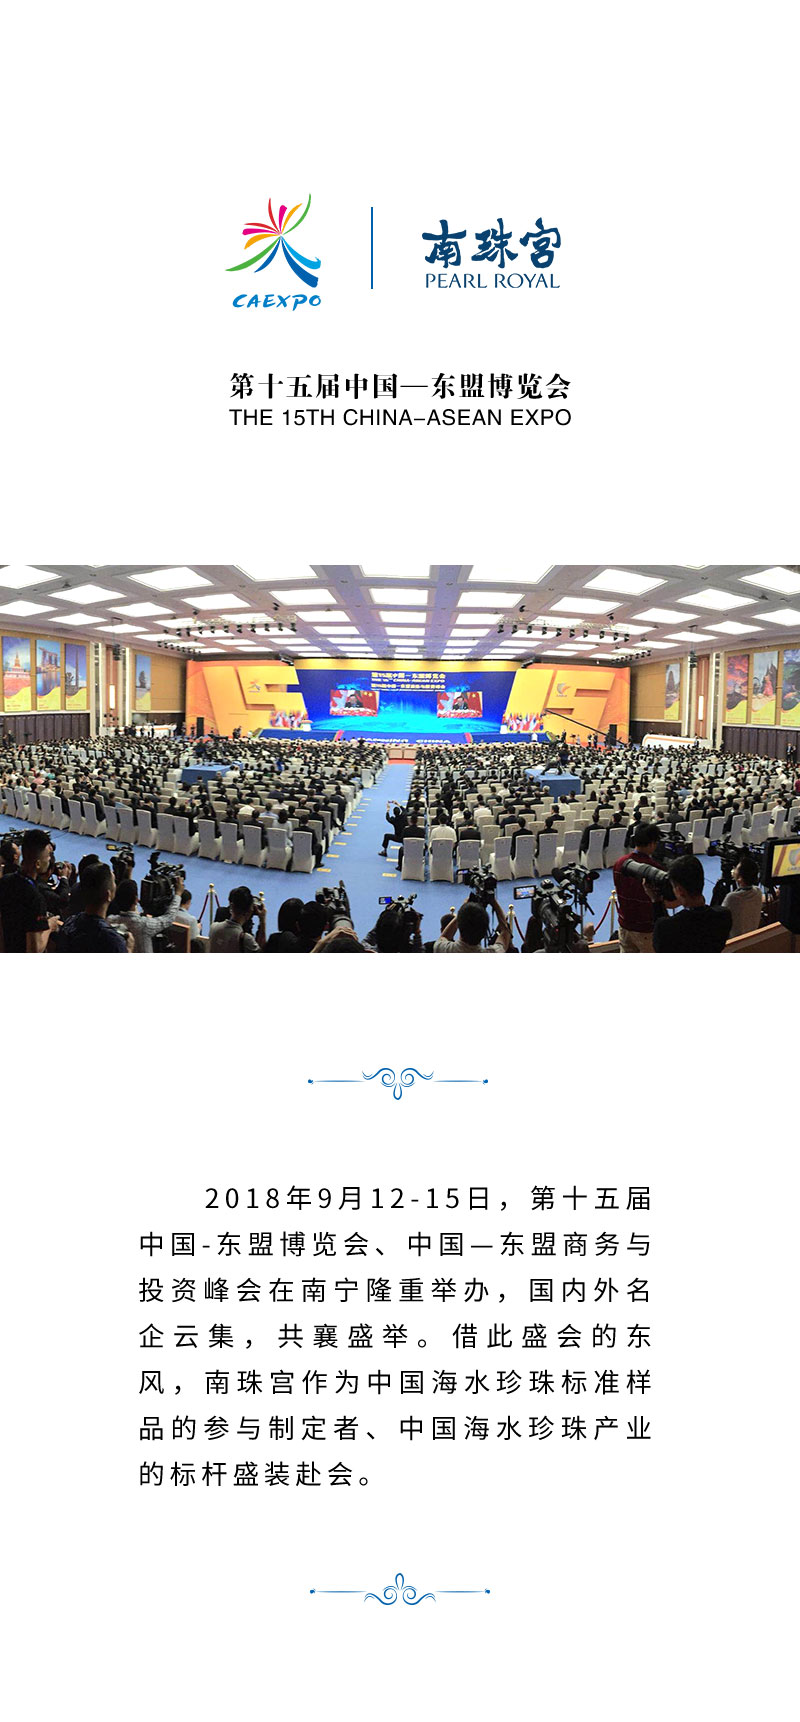 南珠宫展品亮相第十五届中国-东盟博览会-拷贝_01.jpg